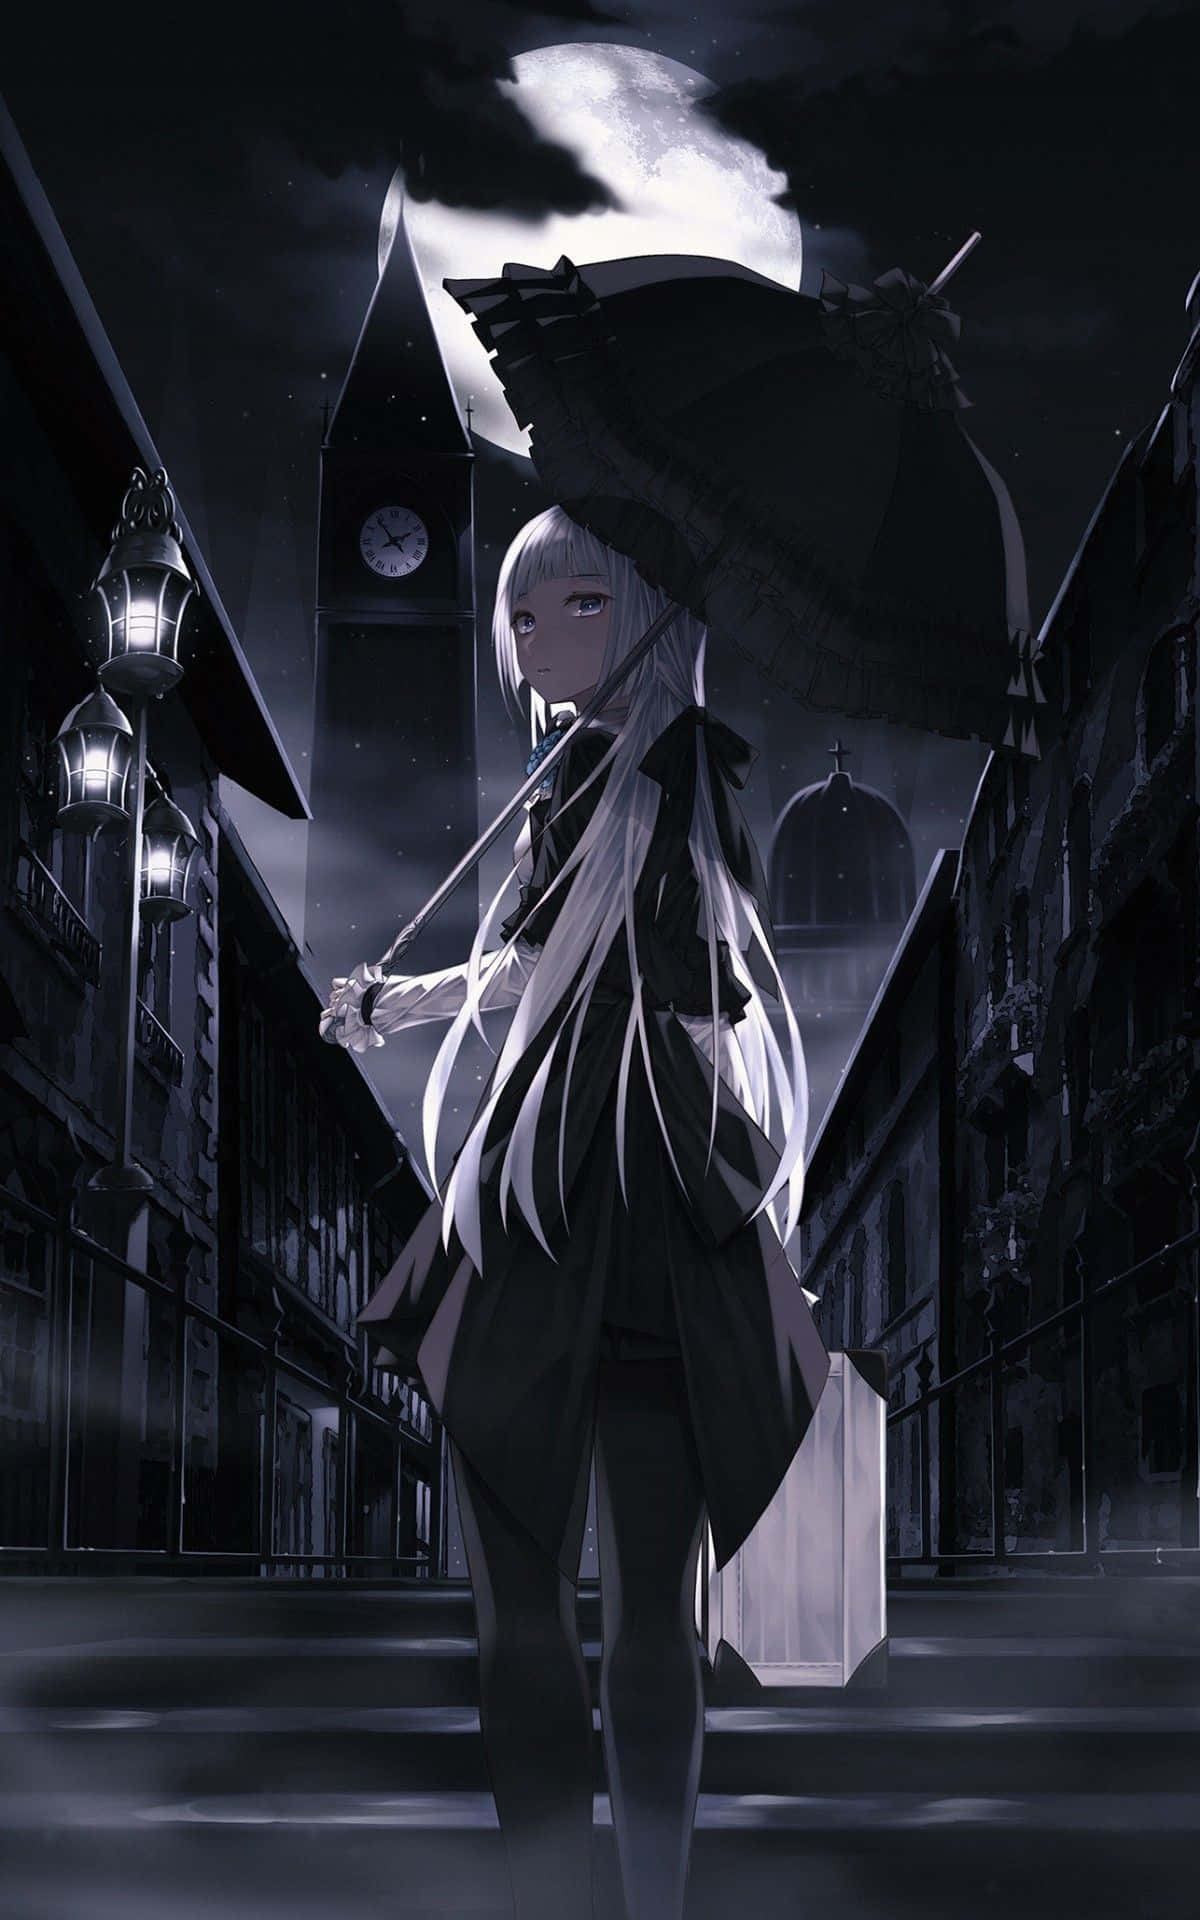 Gothic Anime Girl maler eksploderende stjerner på en mørk himmelblå baggrund. Wallpaper